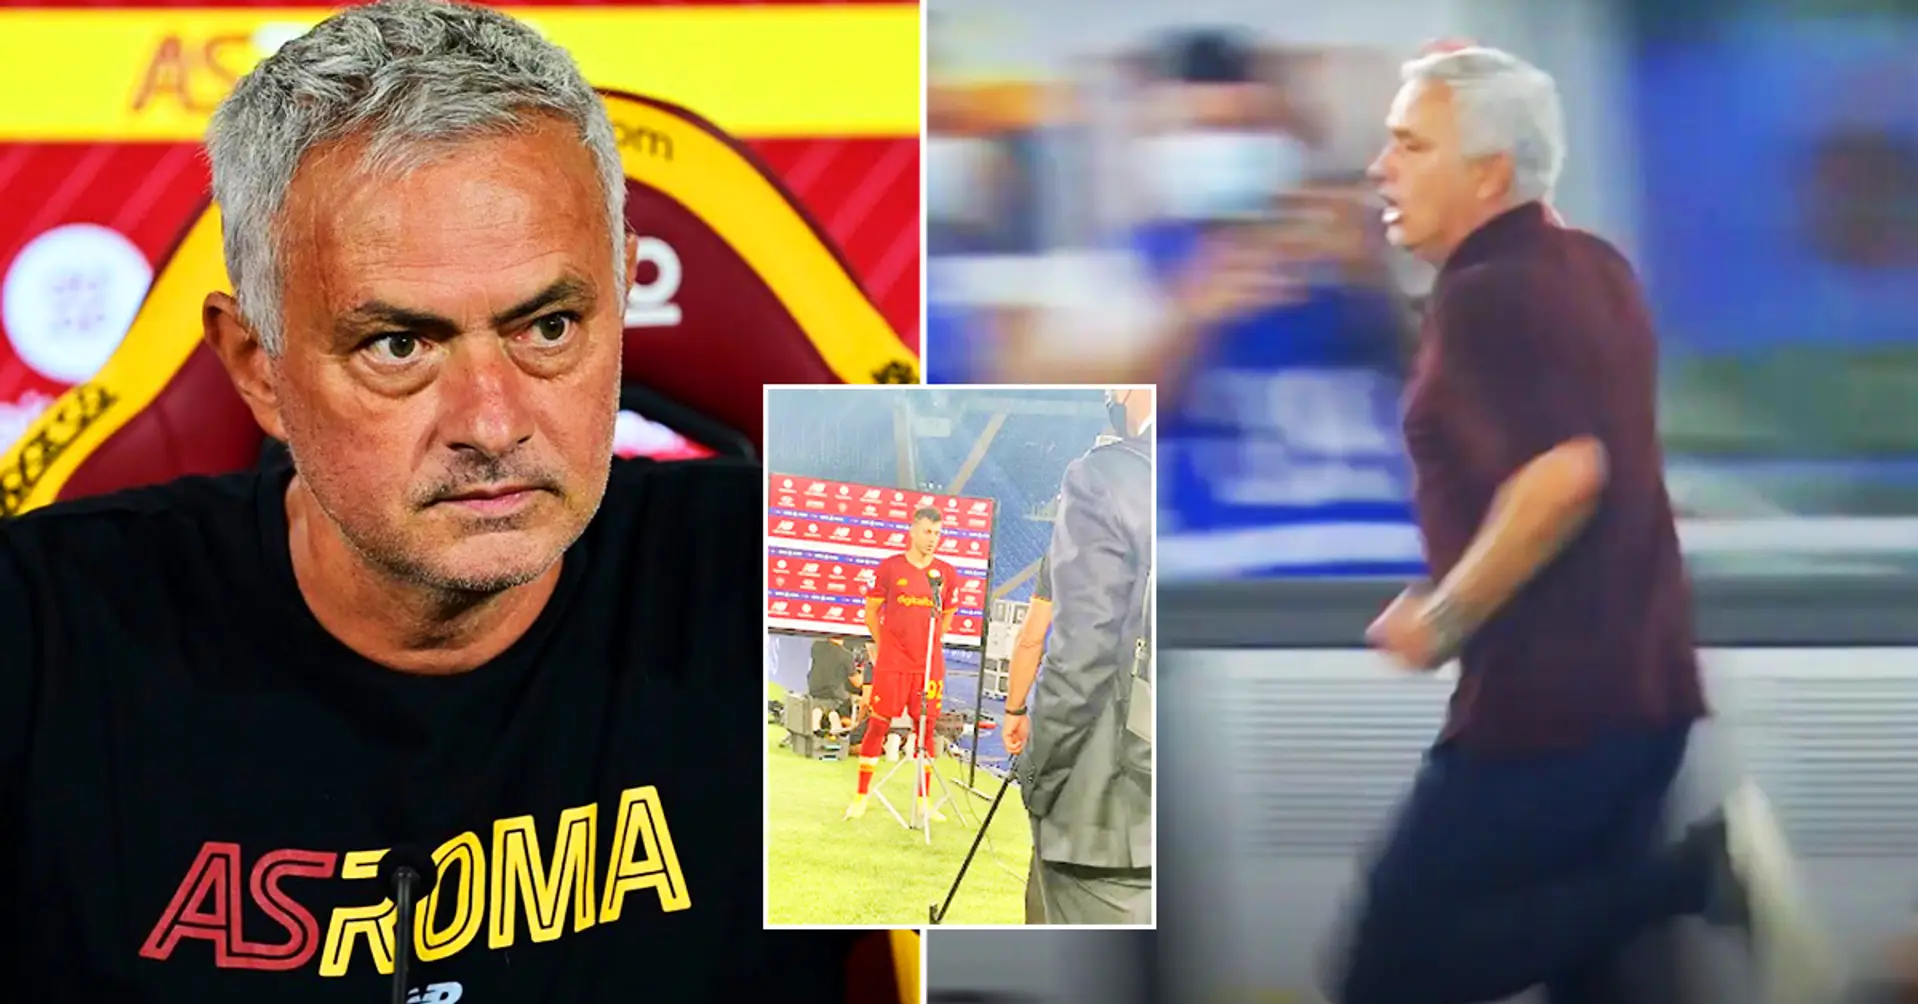 Unglaubliche Szenen in Italien: Jose Mourinho rennt wie Usain Bolt nach dem großartigen Rom-Spiel